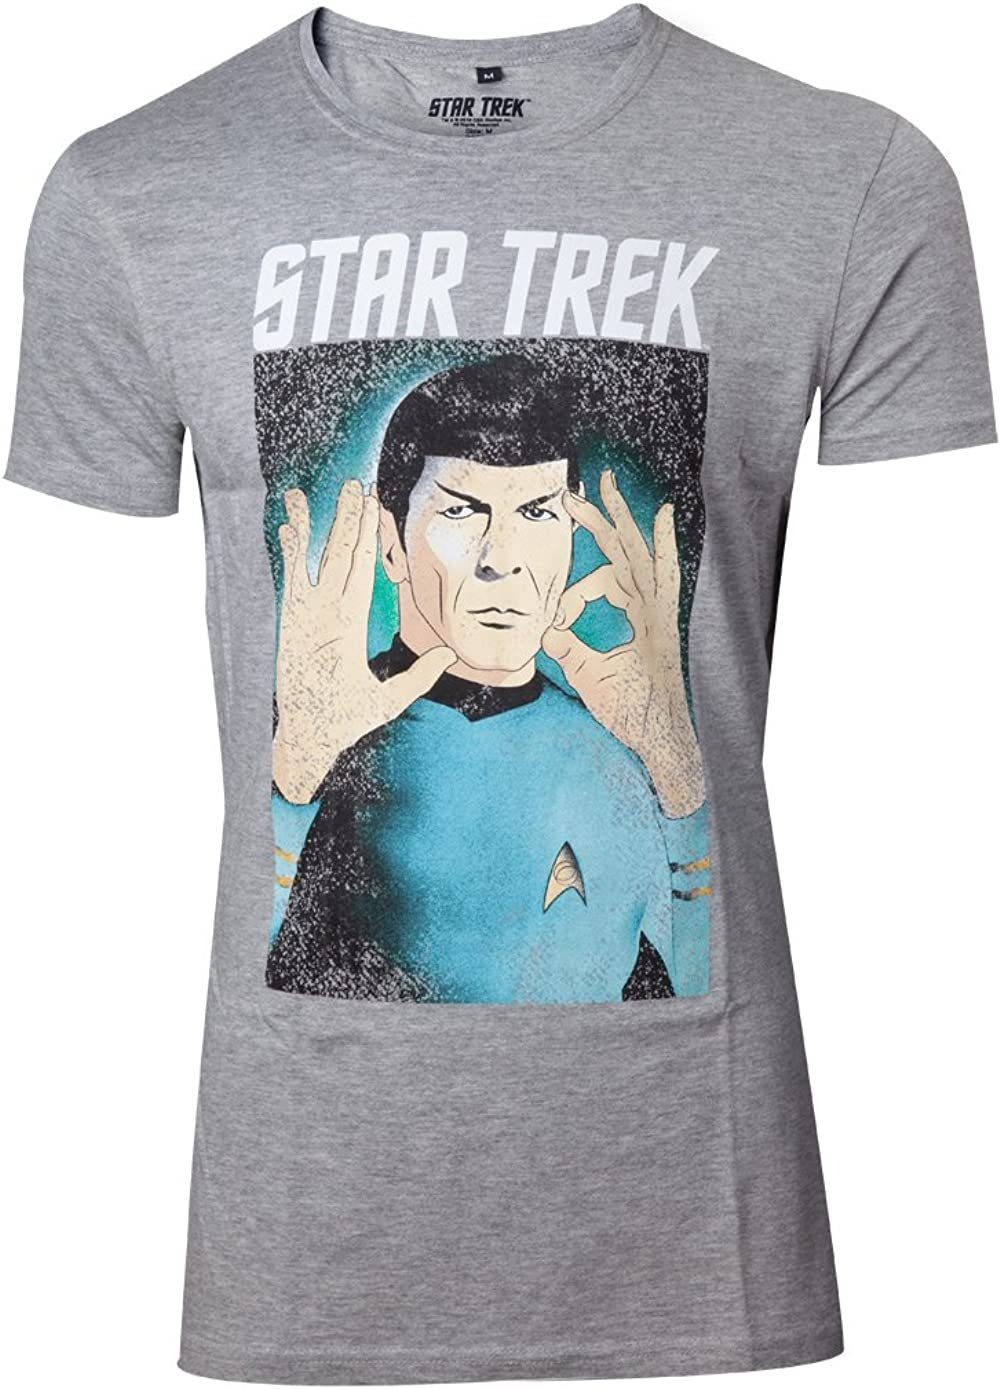 Star Trek Print-Shirt M Größen Logic Herren T-Shirt MELIERT XL the Respect Hellgrau STARTREK S L Erwachsene